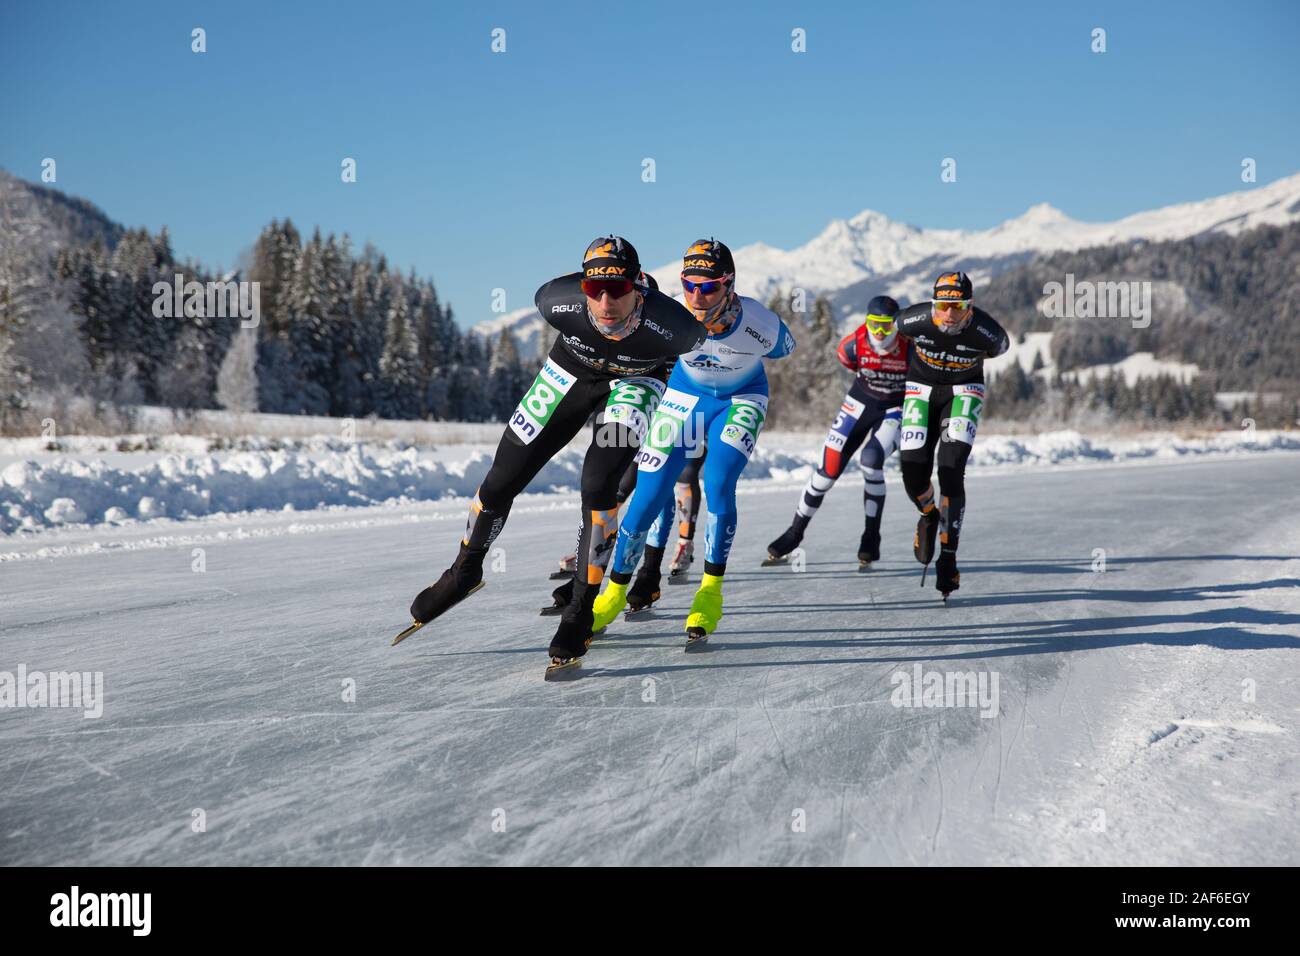 Schlittschuhlaufen auf dem See, in einem schönen Winterlandschaft. Gruppe von Männern Meisterschaft Marathon Ice Speed-Skating auf Natureis, Weissensee, Österreich Stockfoto